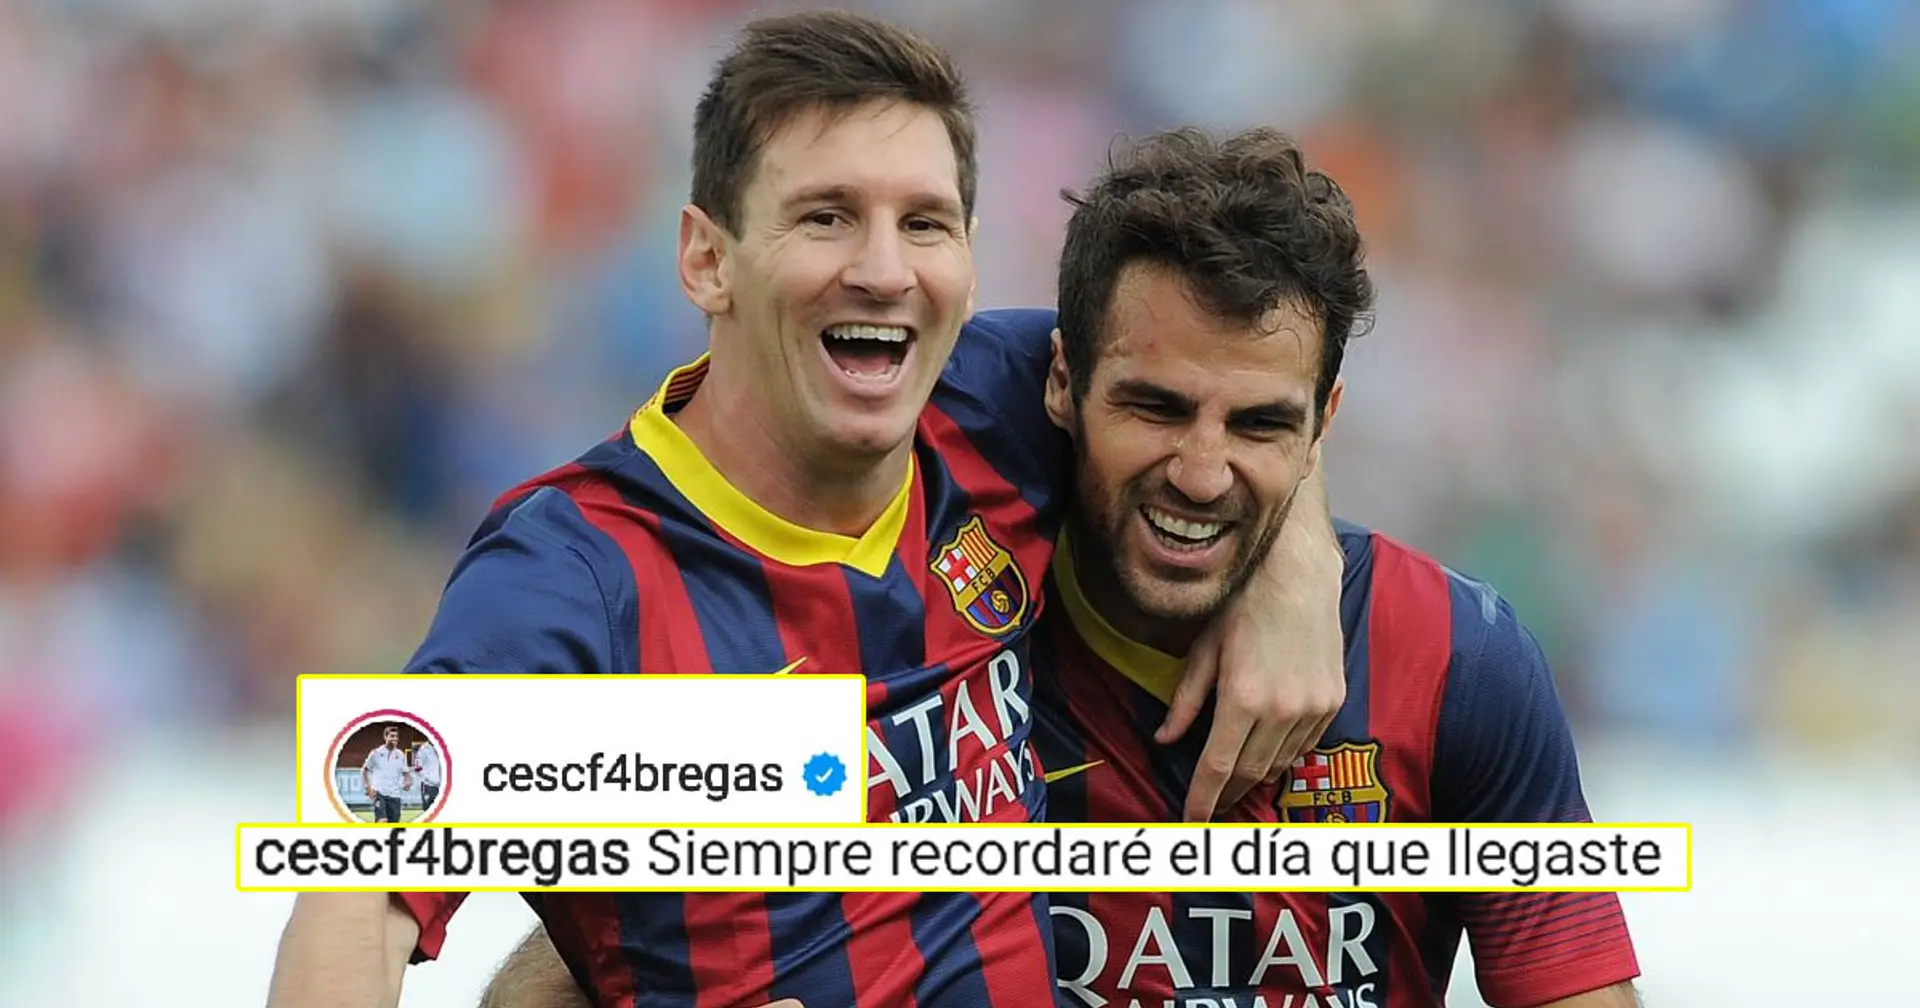 Fabregas se souvient de la fois où il a affronté Messi à l'entraînement pour la première fois alors qu'il écrit un message d'adieu émouvant à Leo